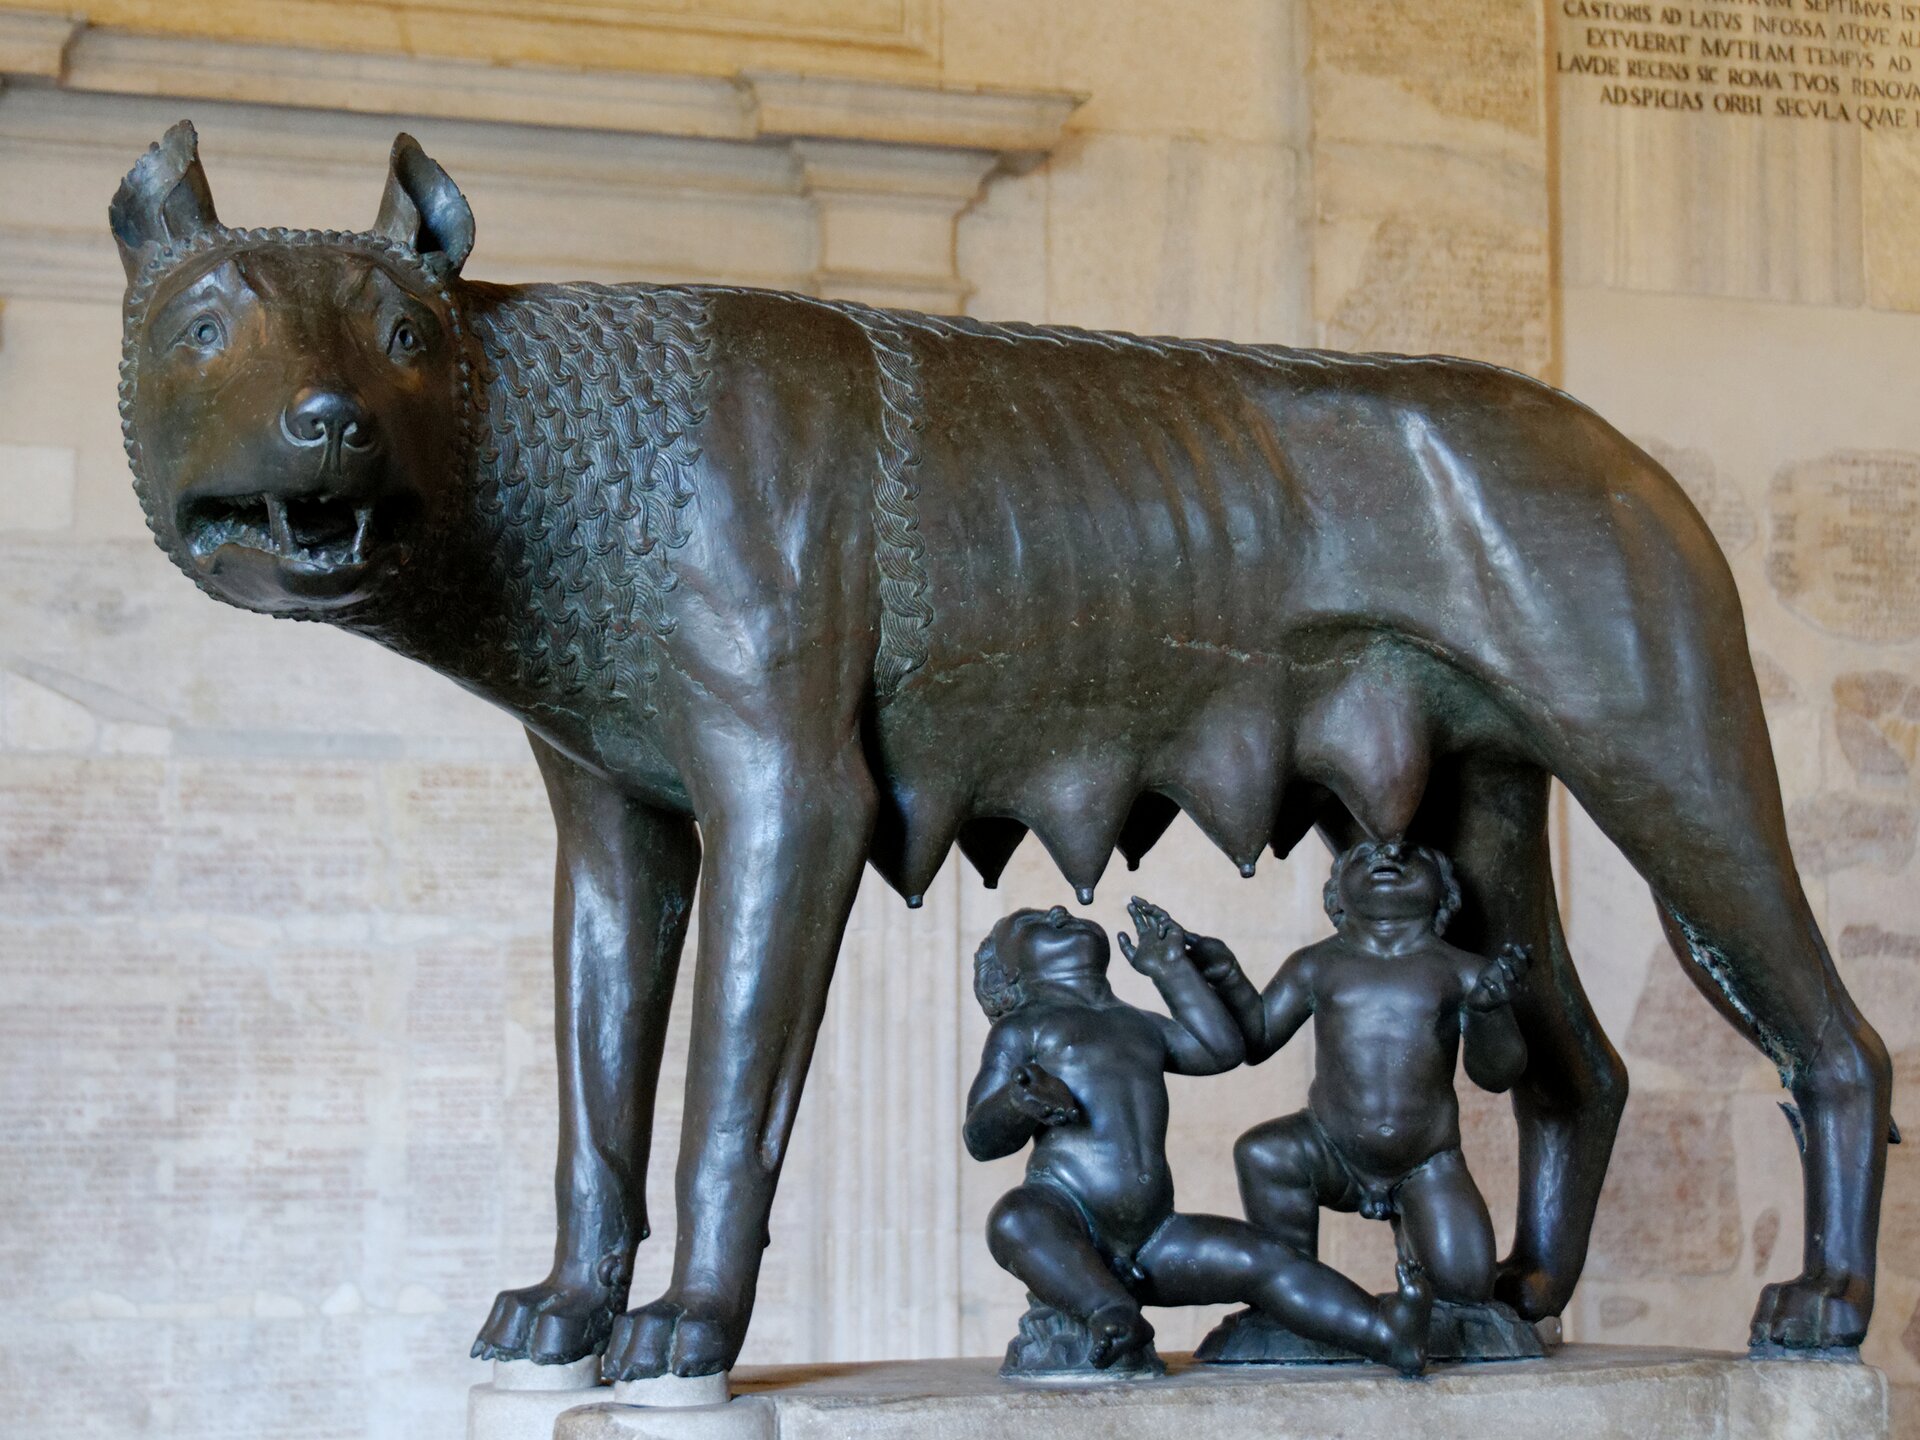 Ilustracja przedstawia "Wilczycę kapitolińską" - rzeźbę nieznanego autora nadnaturalnych rozmiarów. Brązowa wilczyca spogląda w bok, wyczekując zagrożenia. Pod nią znajdują się posążki legendarnych bliźniaków Romulusa i Remusa spokojnie ssących jej sutki.